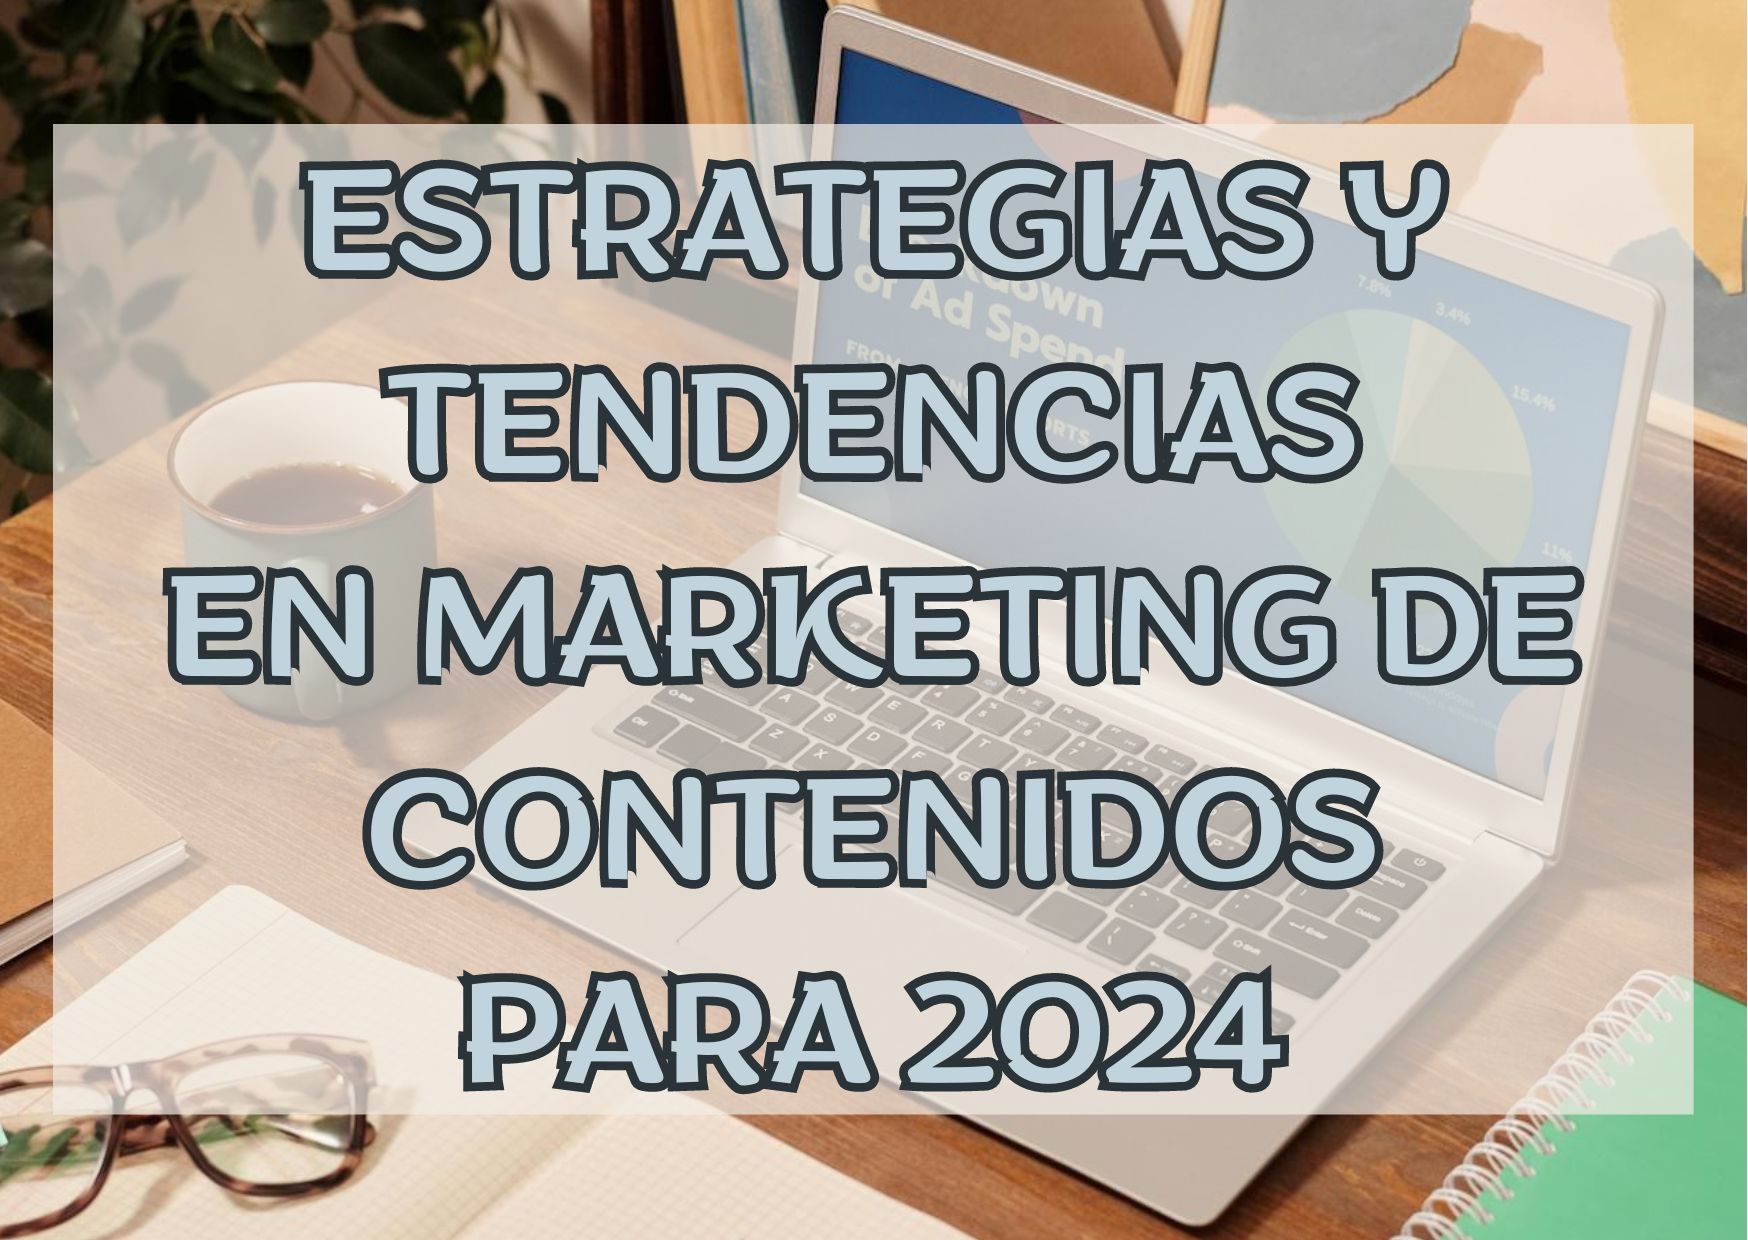 Estrategias y tendencias en Marketing de Contenidos para 2024